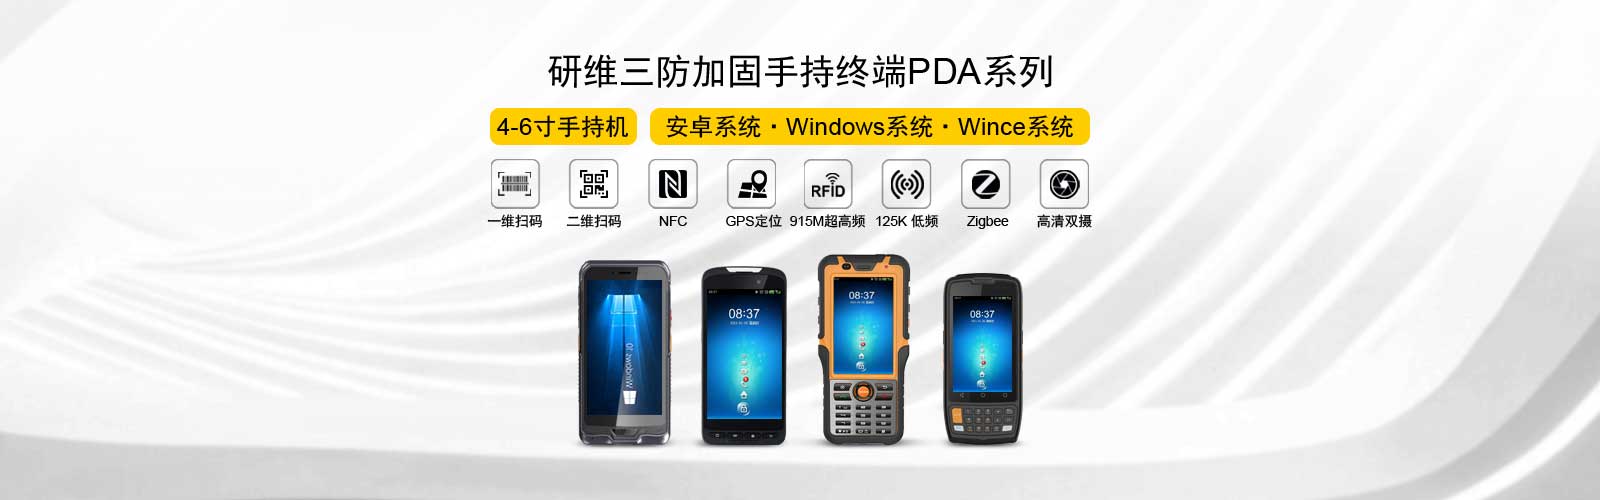 研维三防加固手持终端PDA系列，4-6寸手持机，安卓系统/windows系统/wince系统，可选一维码、二维码、NFC、GPS定位、超高频、125KHz低频、zigbee、高清双摄像头